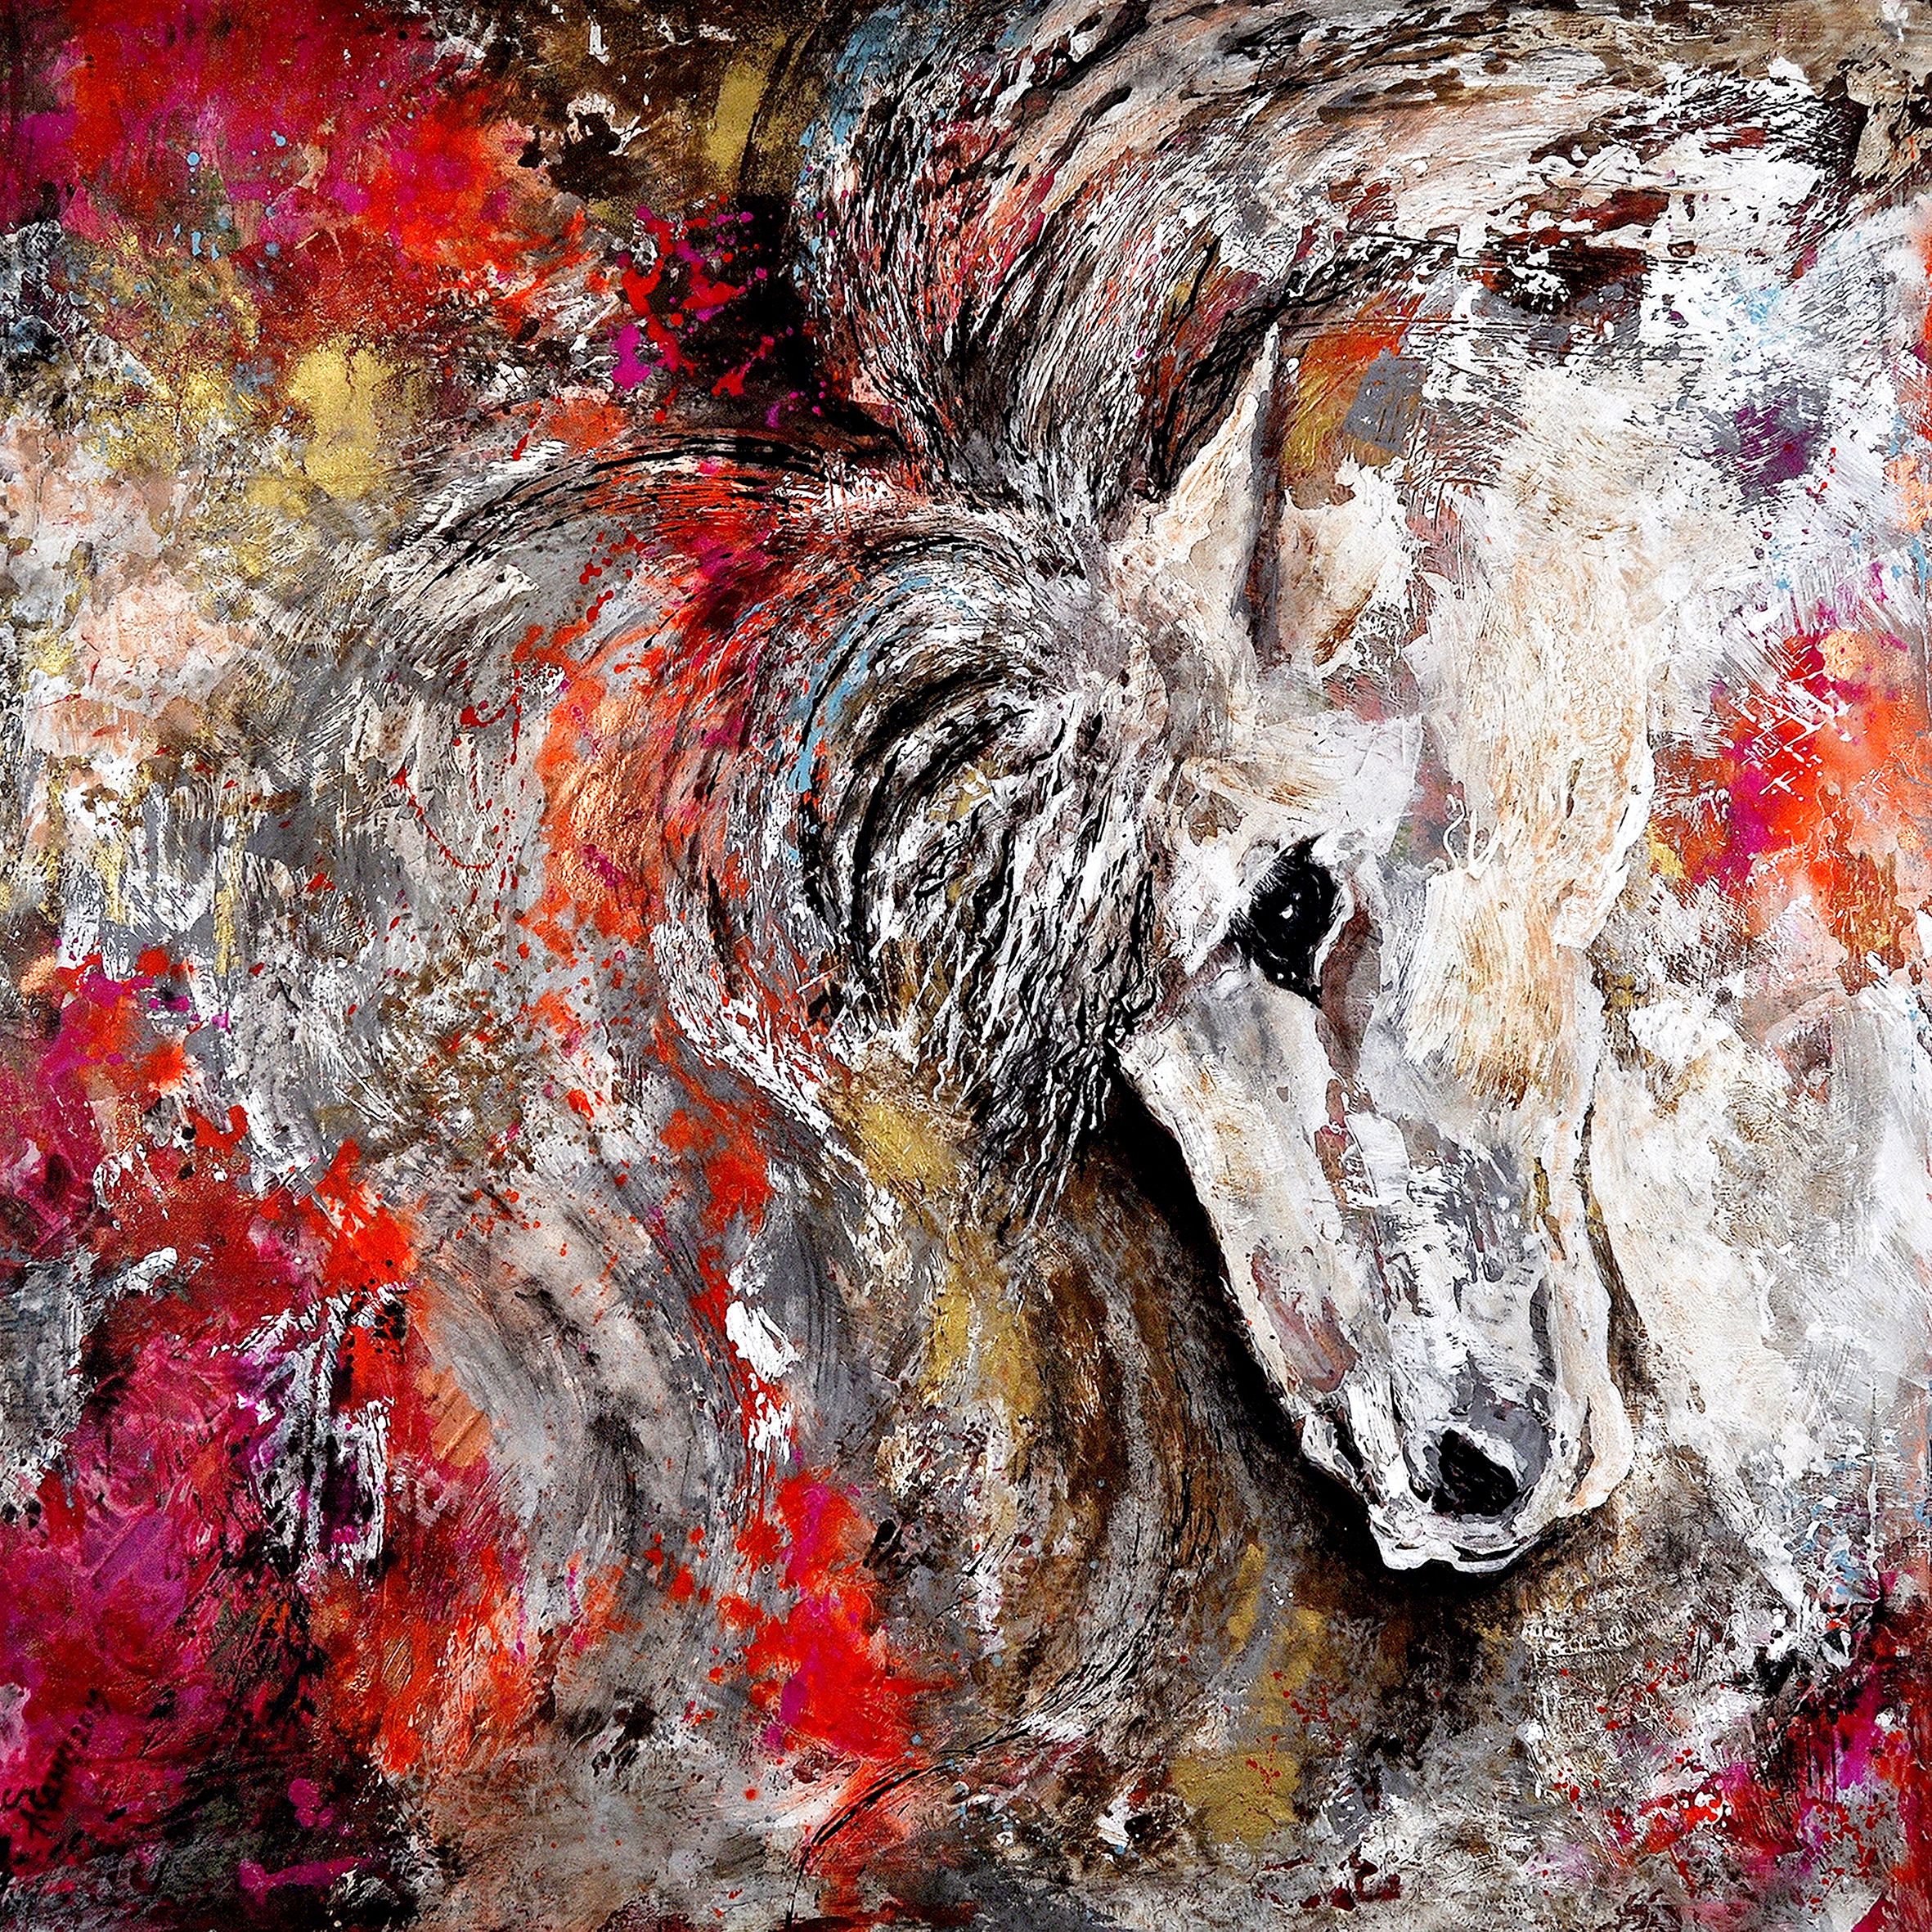 Por fin libre. 1 x 1 metros. Técnica mixta sobre tabla y pan de oro. Pìntura de un caballo blanco con detalles grises en la crin, y zonas con colores rojos a lo largo de la pintura.
